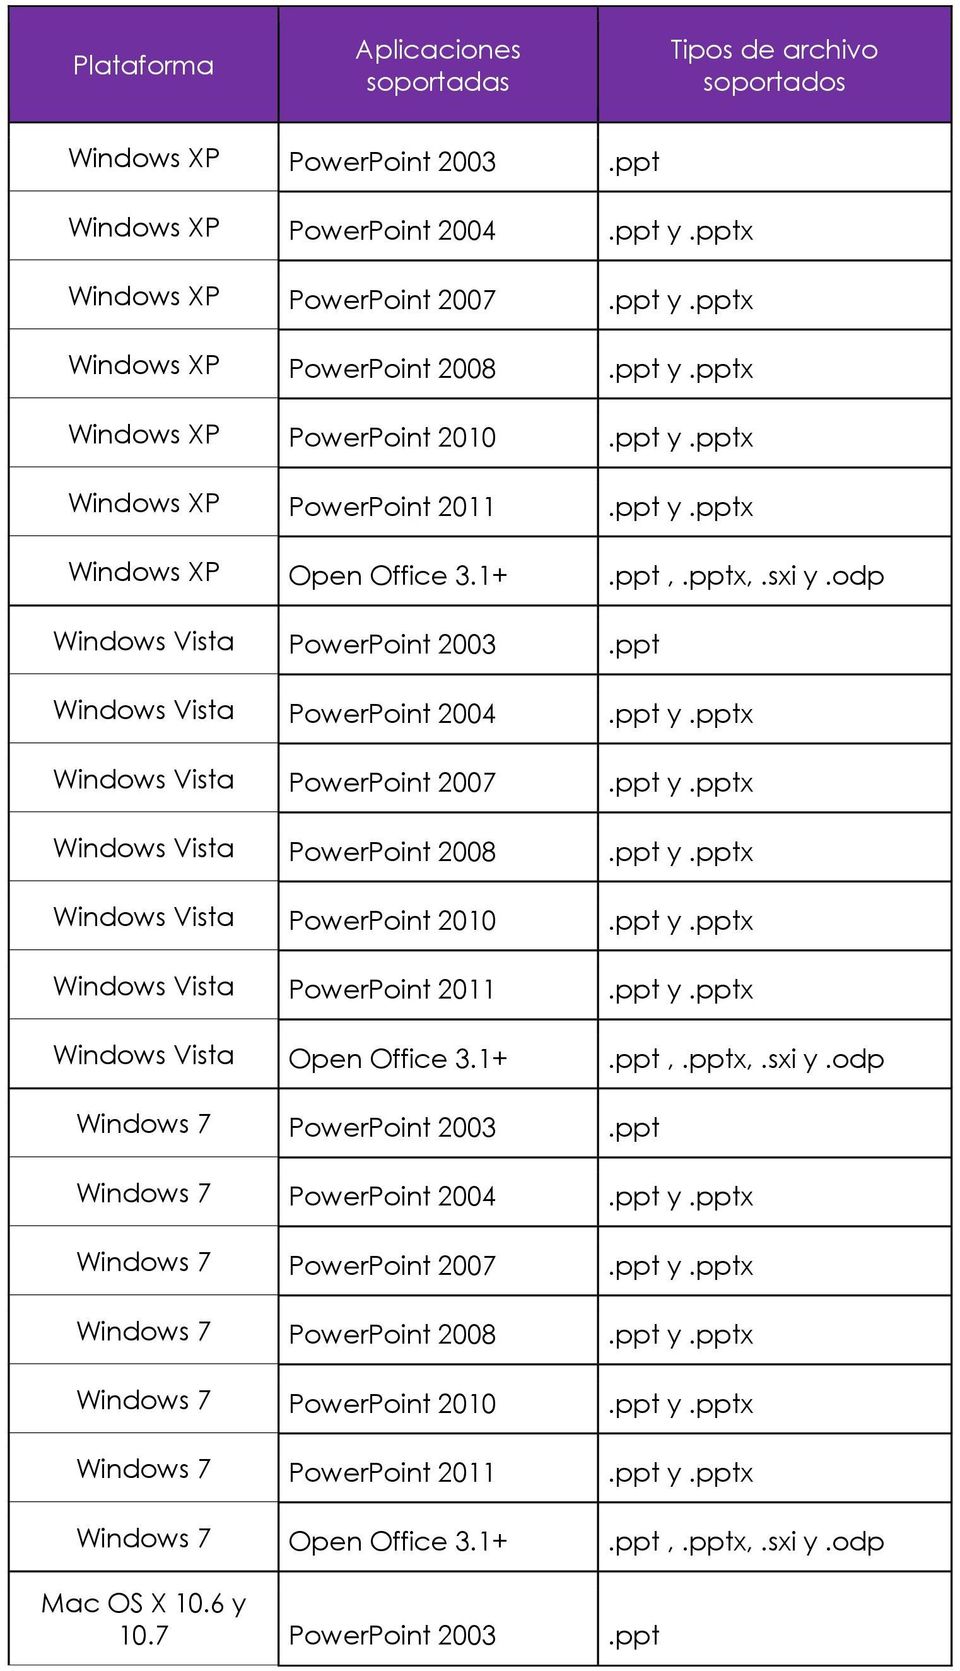 ppt y.pptx Windows Vista PowerPoint 2008.ppt y.pptx Windows Vista PowerPoint 2010.ppt y.pptx Windows Vista PowerPoint 2011.ppt y.pptx Windows Vista Open Office 3.1+.ppt,.pptx,.sxi y.